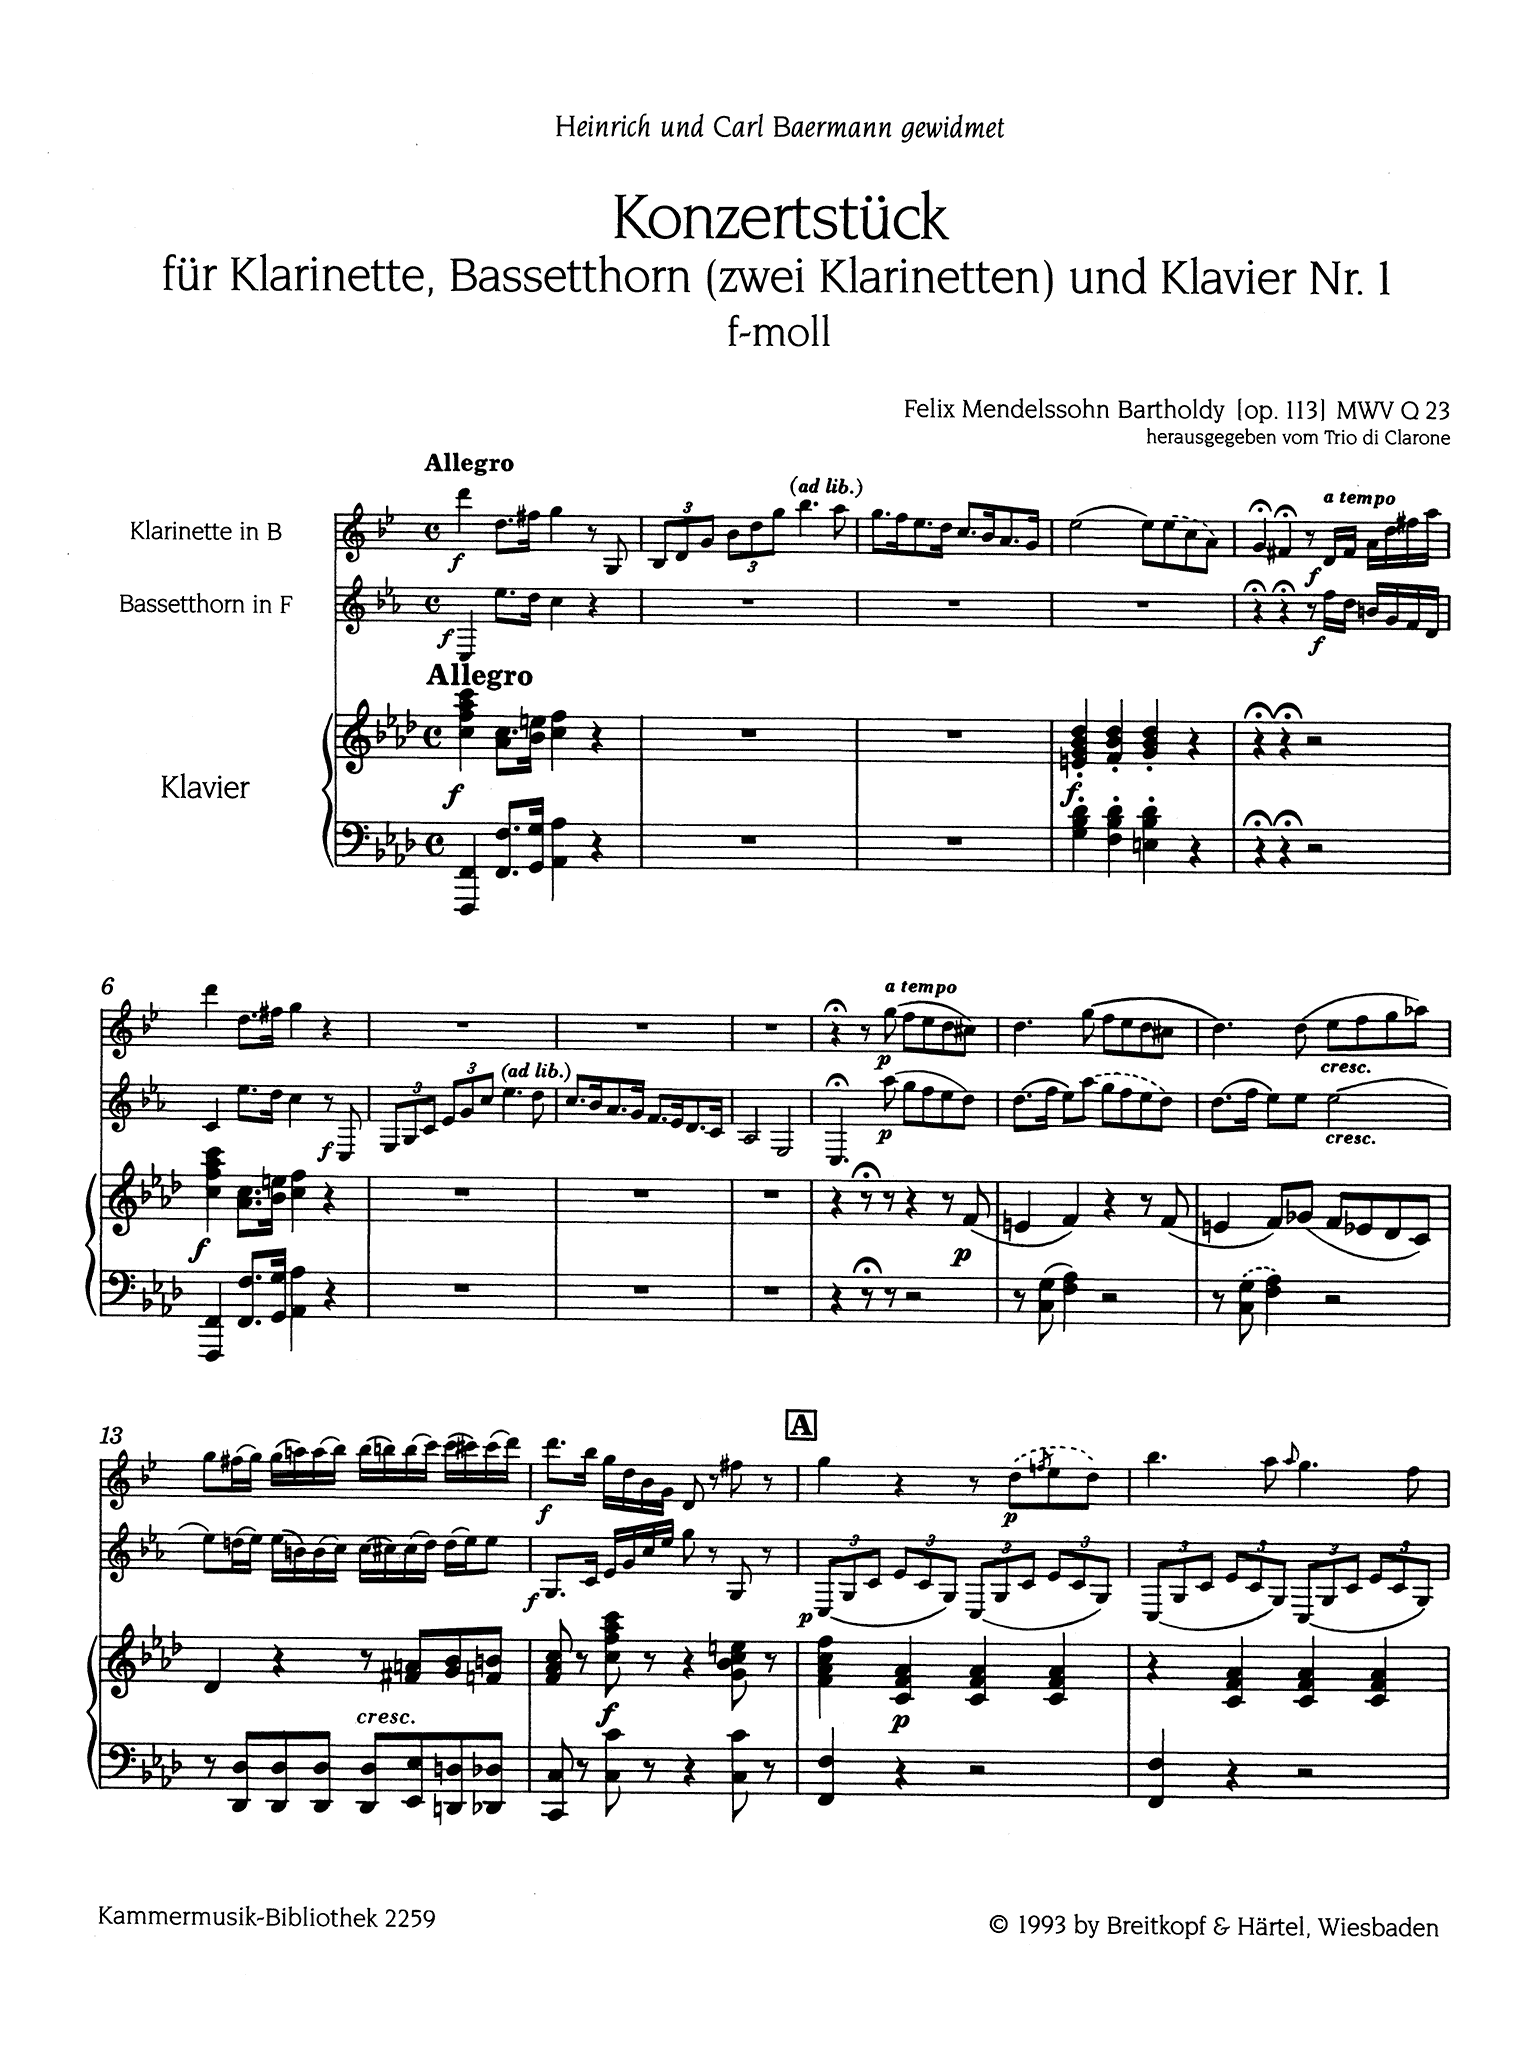 Concertpiece No. 1 in F Minor, Op. 113 Score